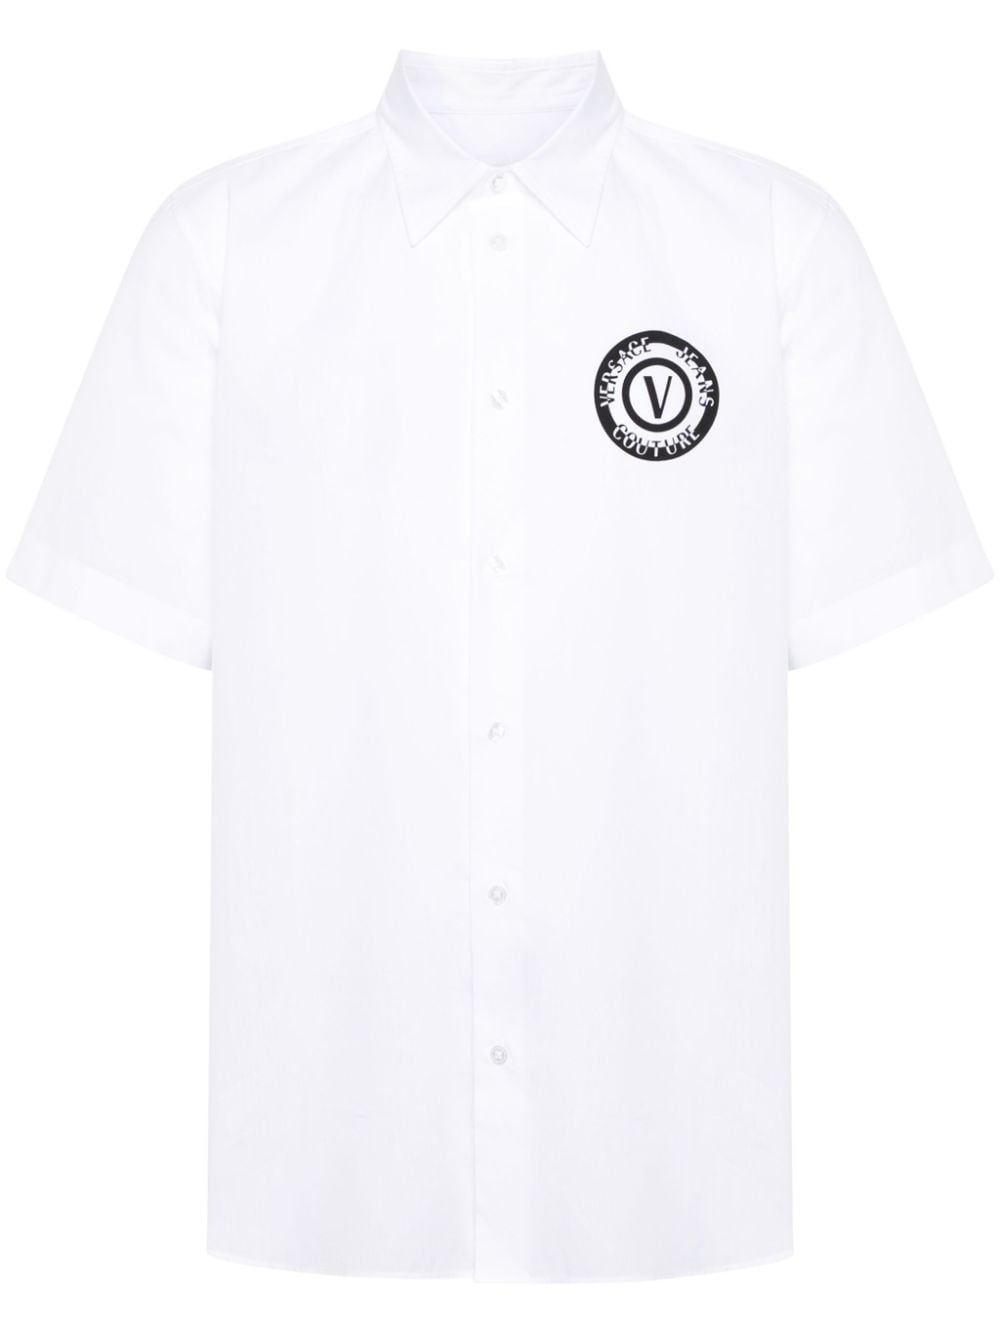 Camicia bianca logo nero